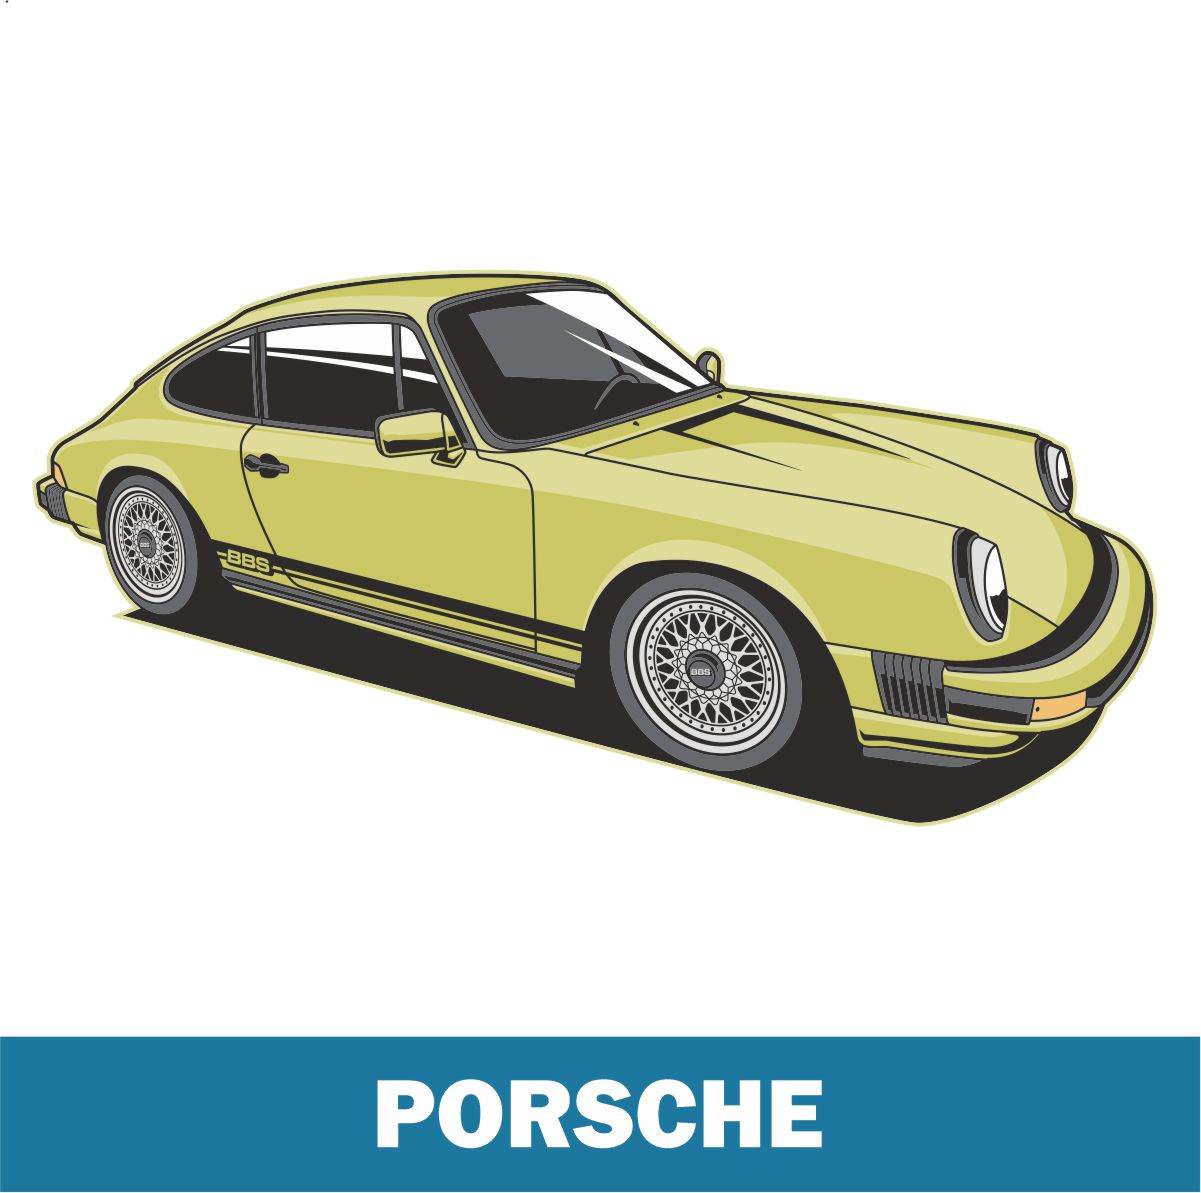 Ersatzteile Teile Porsche 911 912 91 924 356 kaufen